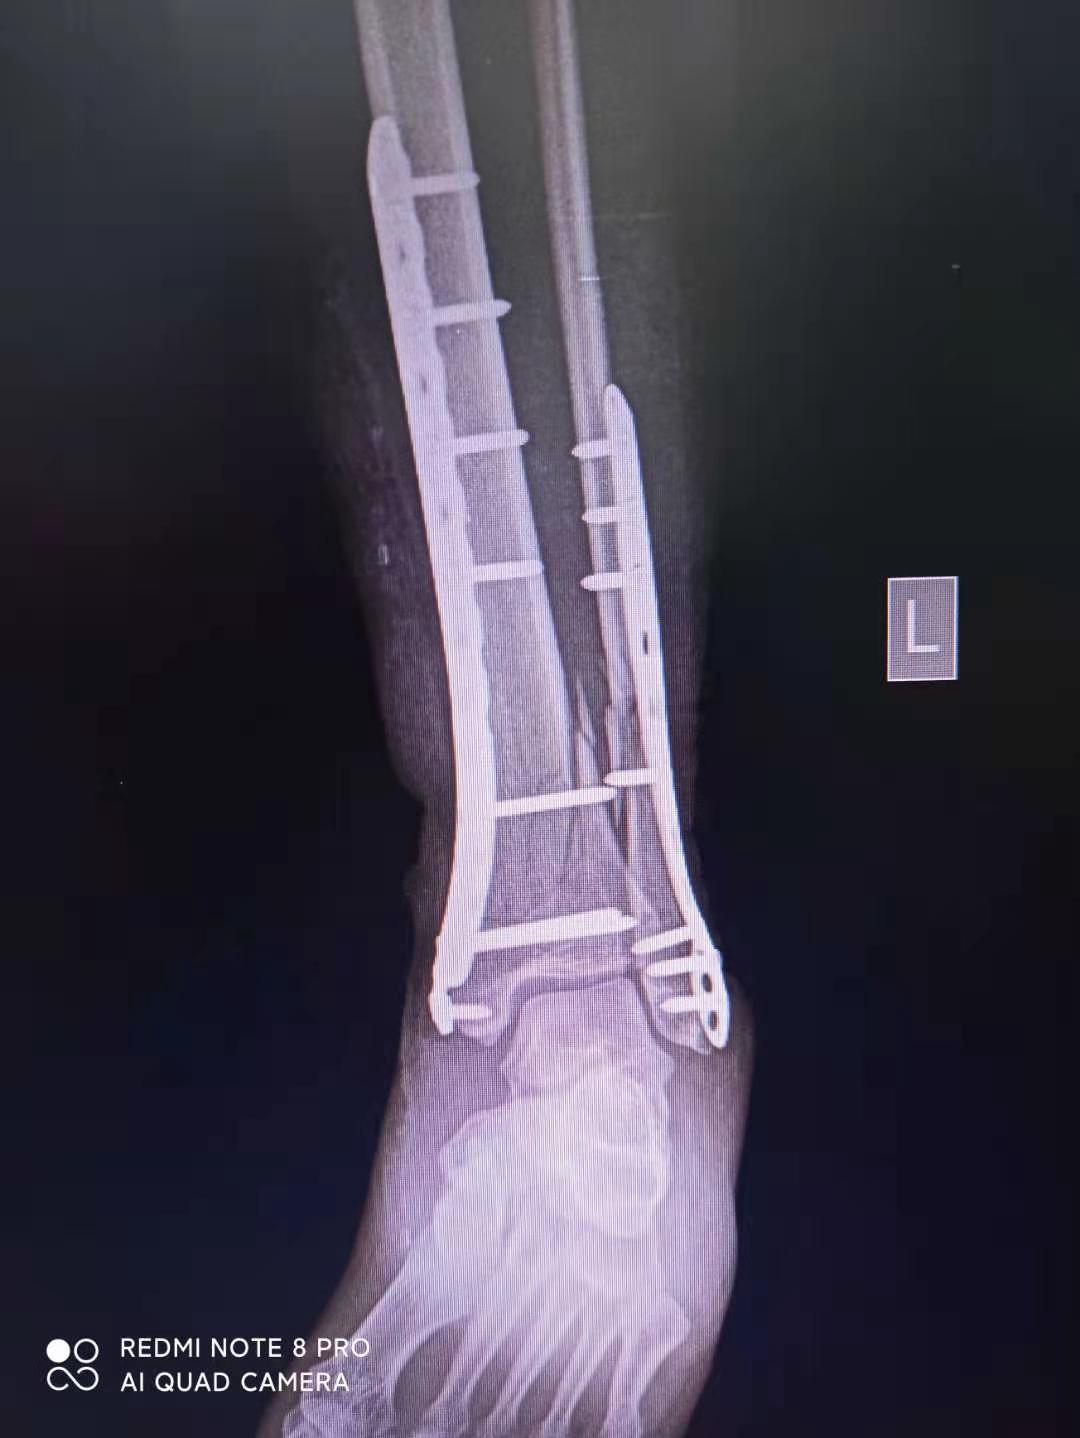 桡骨远端骨折钢板固定的手术技巧 - 好医术早读文章 - 好医术-赋能医生守护生命